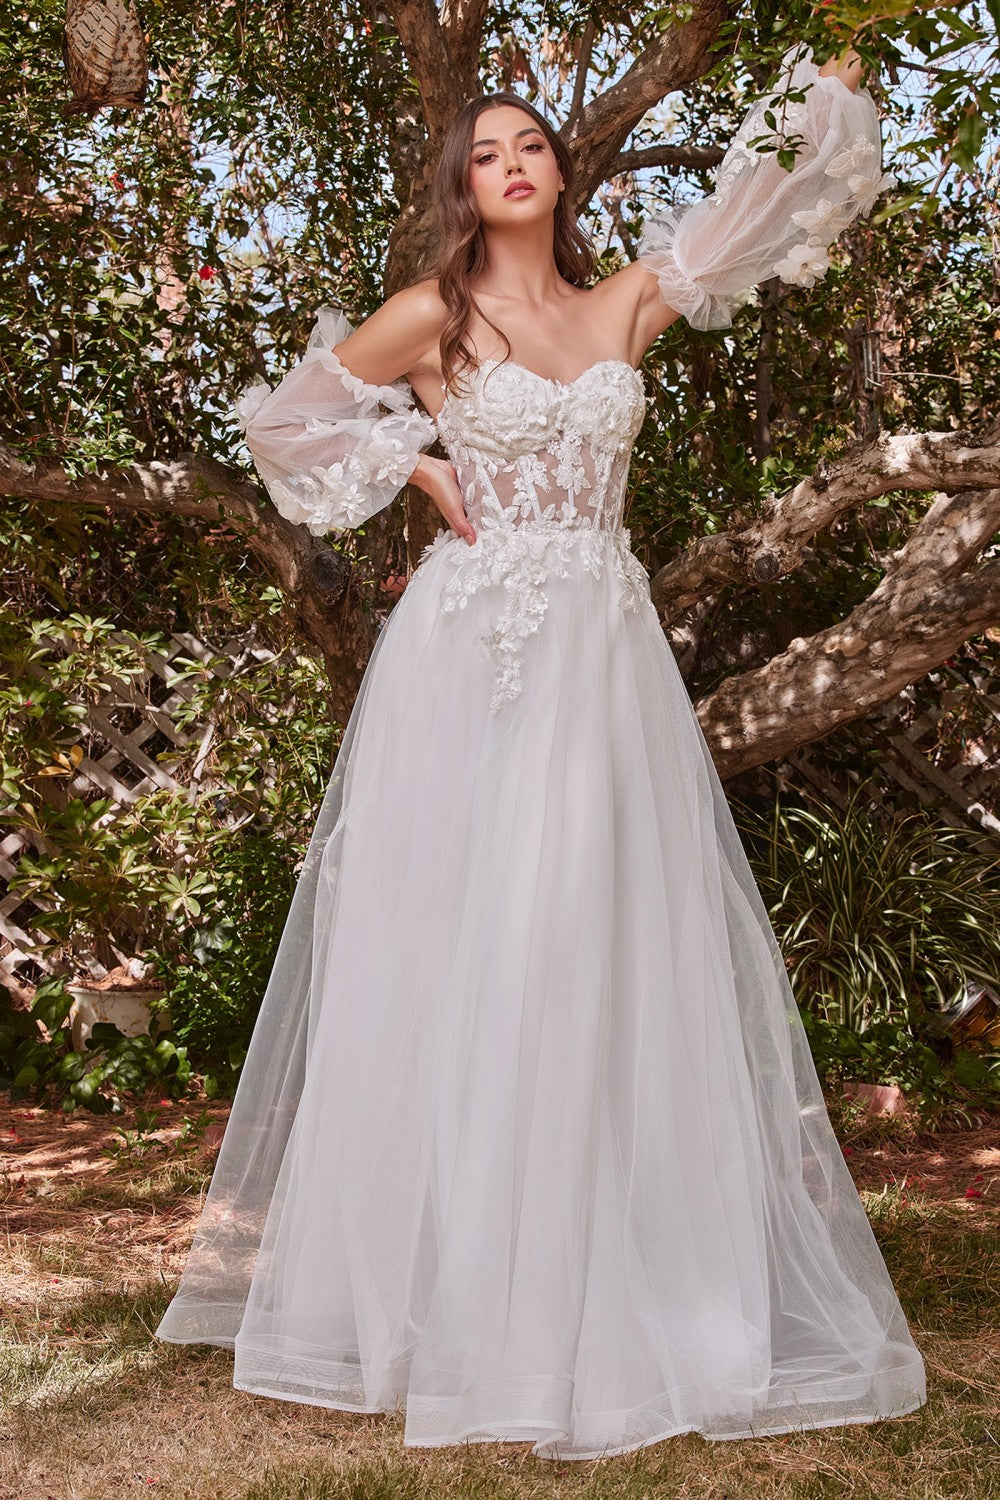 Lace Vintage Sweet Princess Style Strapless Off Shoulder Wedding & Bride Gown 3D Floral Appliqués Romantic Vibes Dress CDCD962W-0